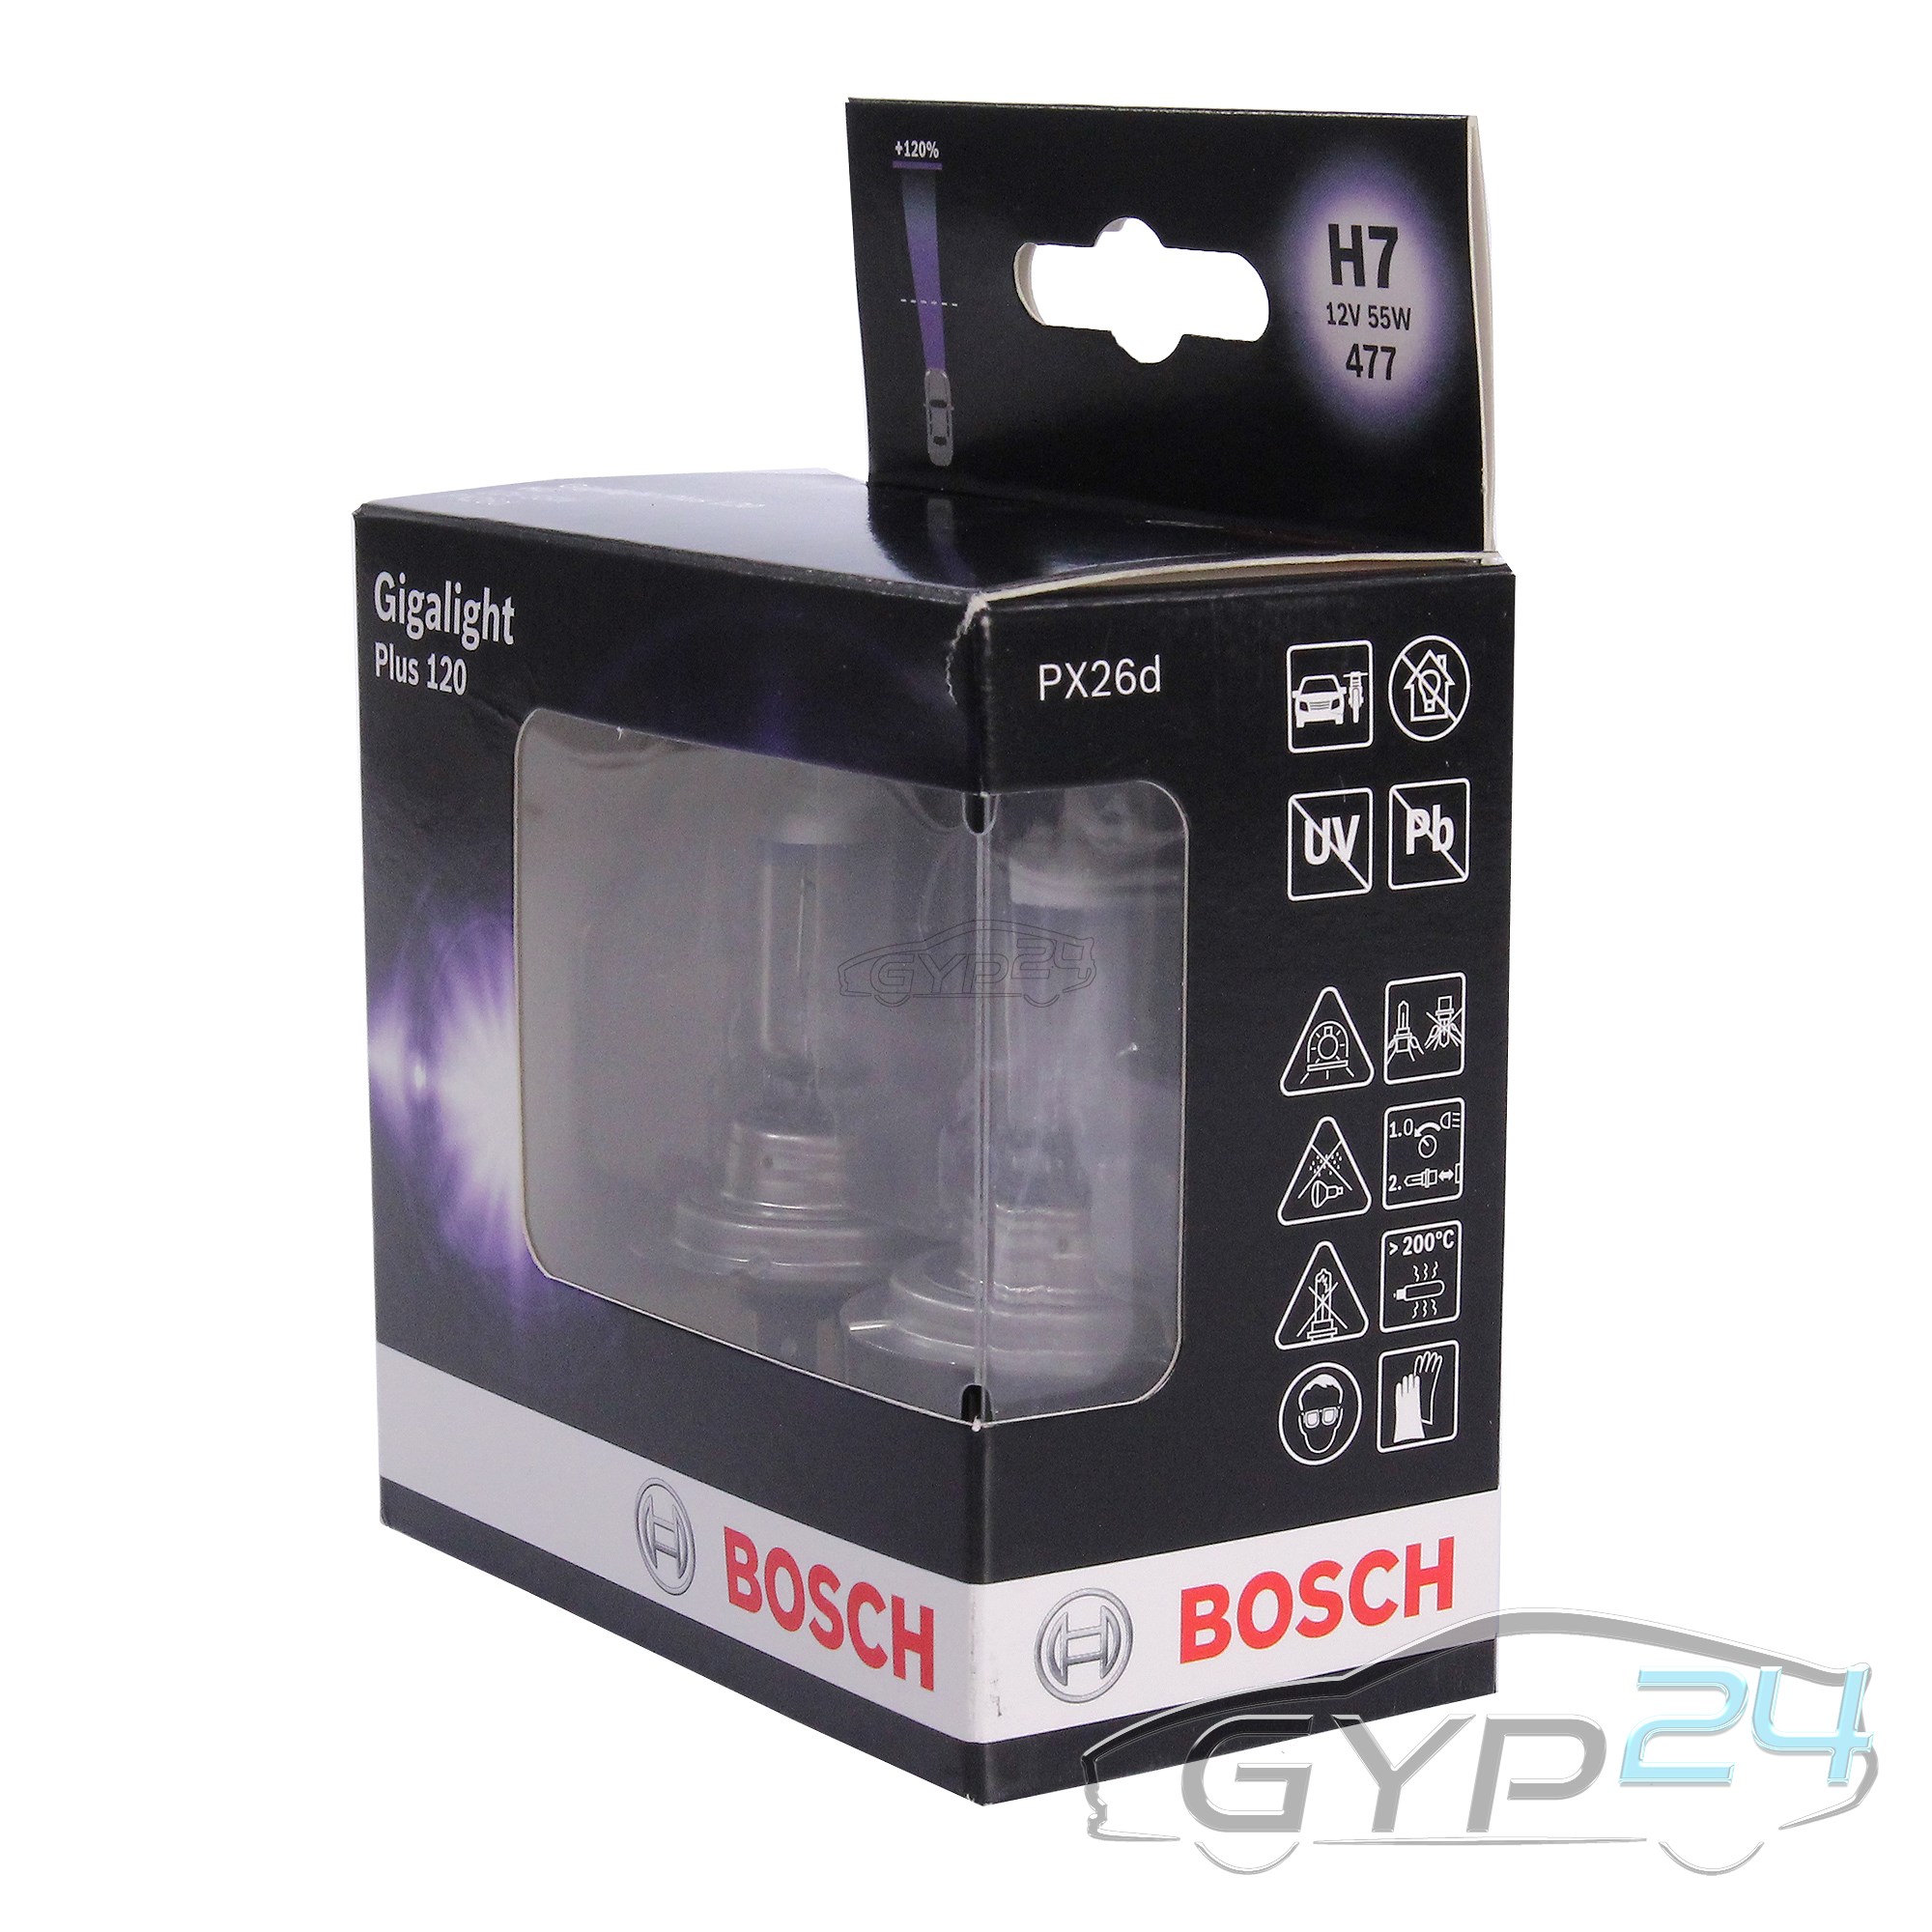 2x Bosch gigalight plus 120 h7 55 W Ampoules Voiture Ampoules 31678157 